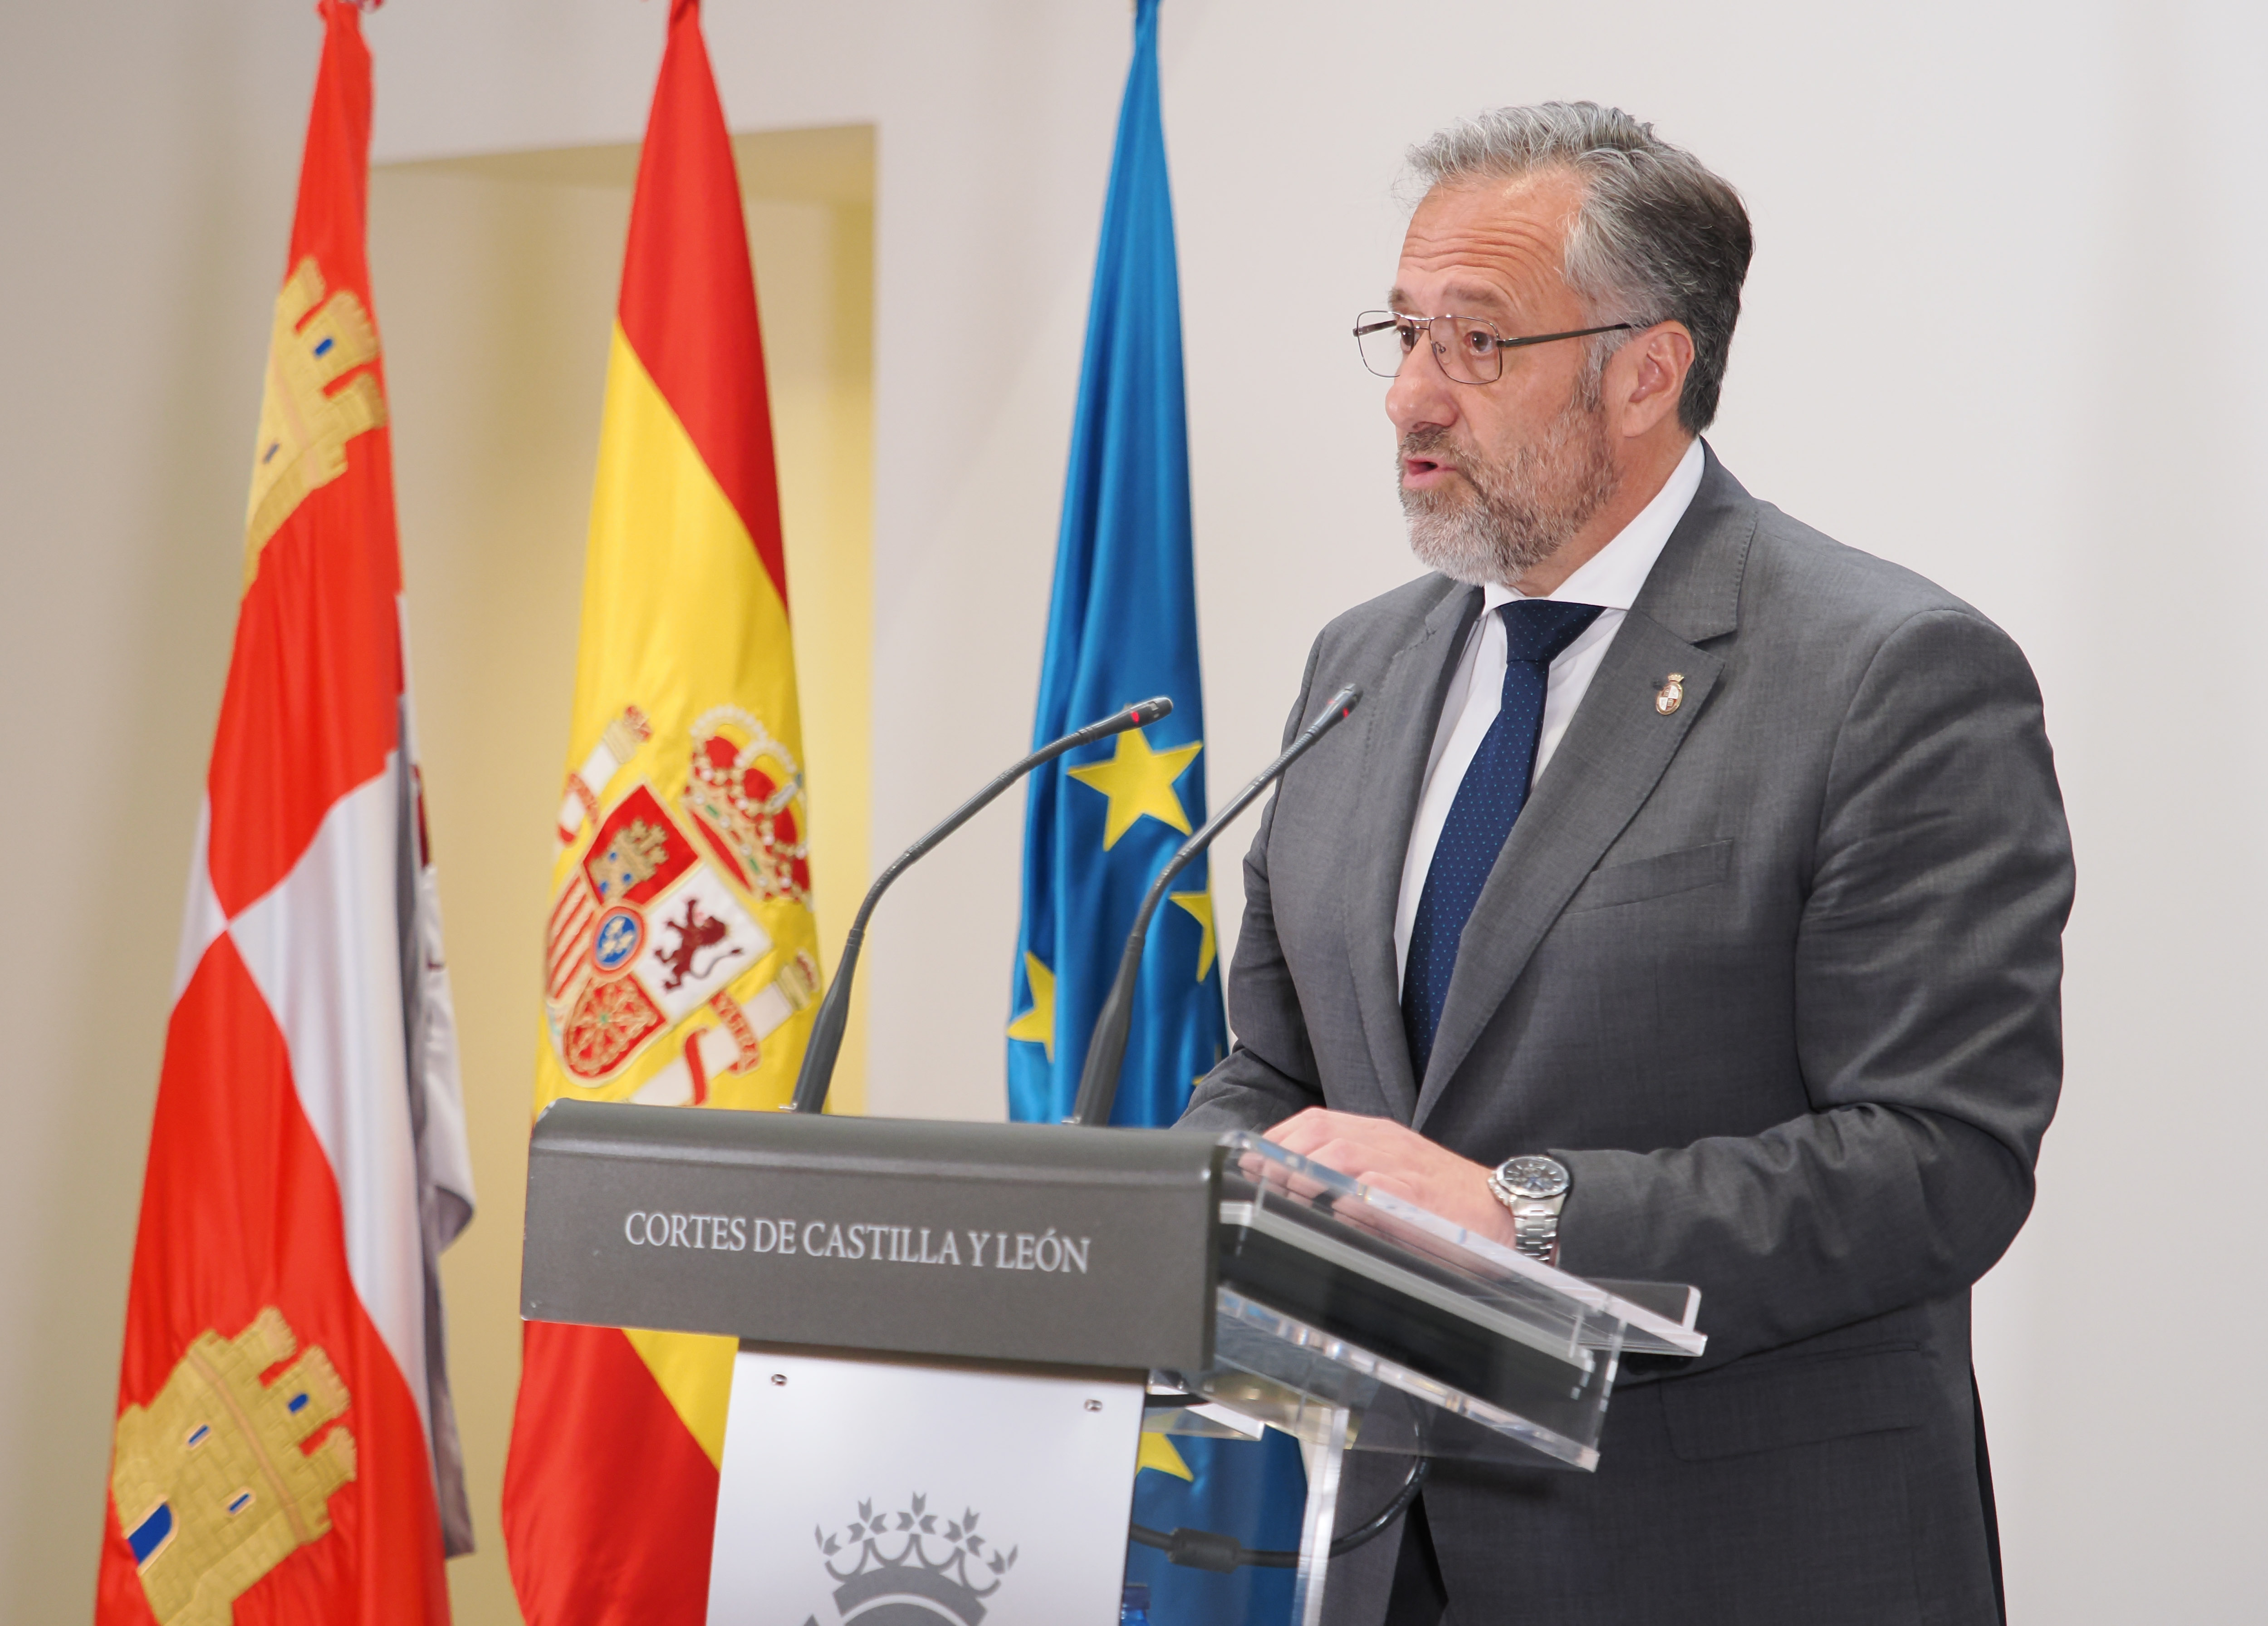 El Presidente de las Cortes de Castilla y León, Carlos Pollán, inaugurando el acto